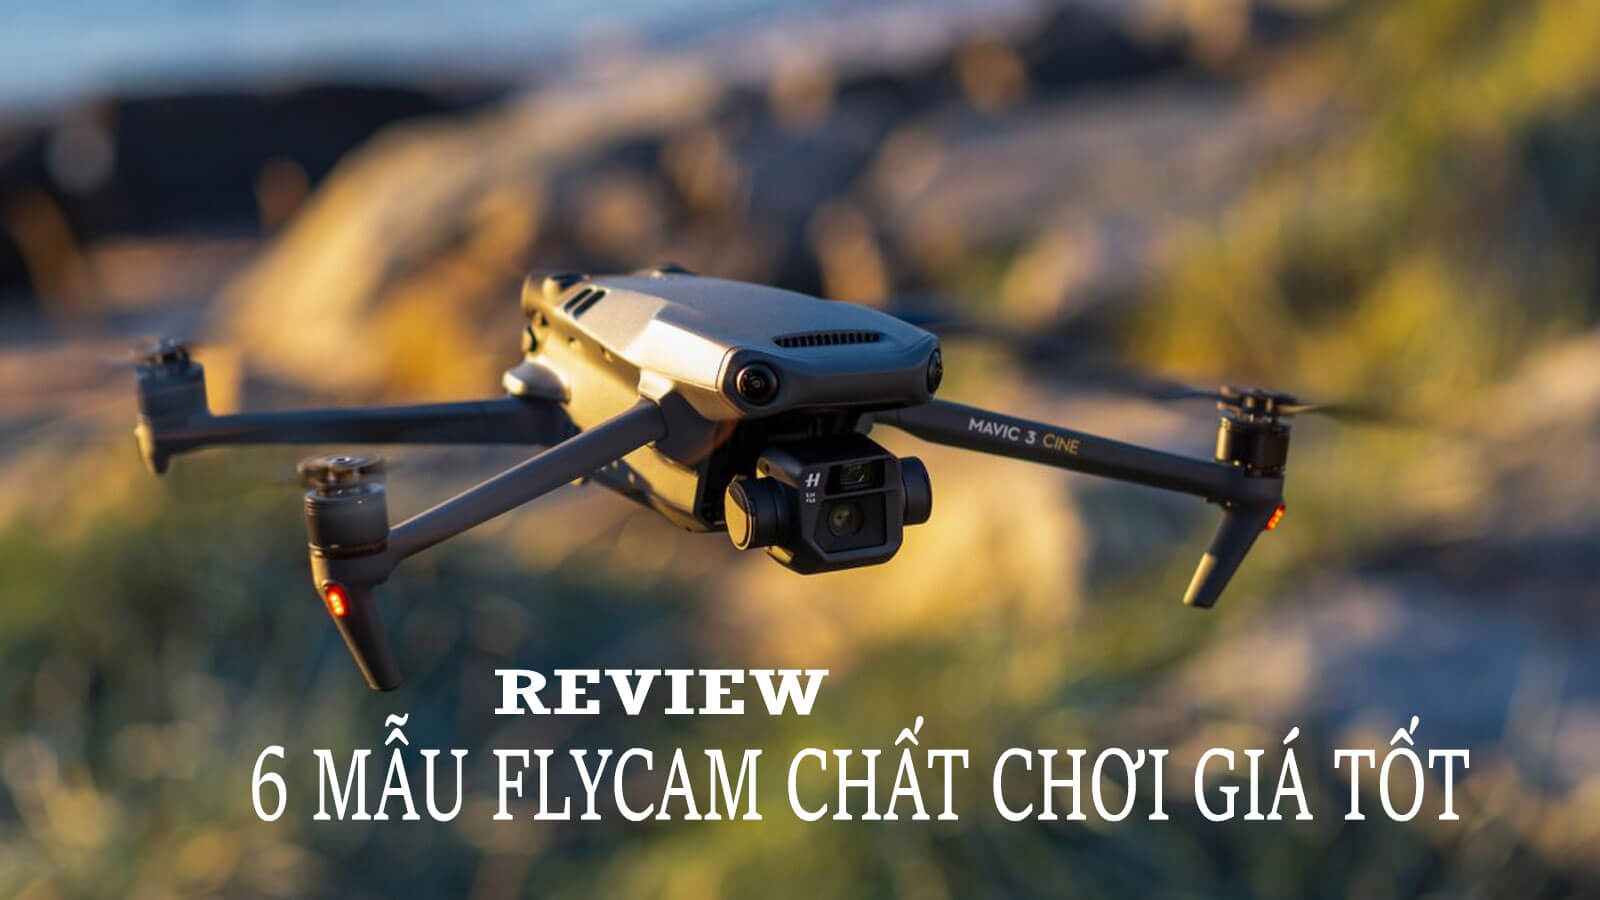 Review 6 Chiếc Flycam Chơi Tết Hay Đi Phượt Đều Chất